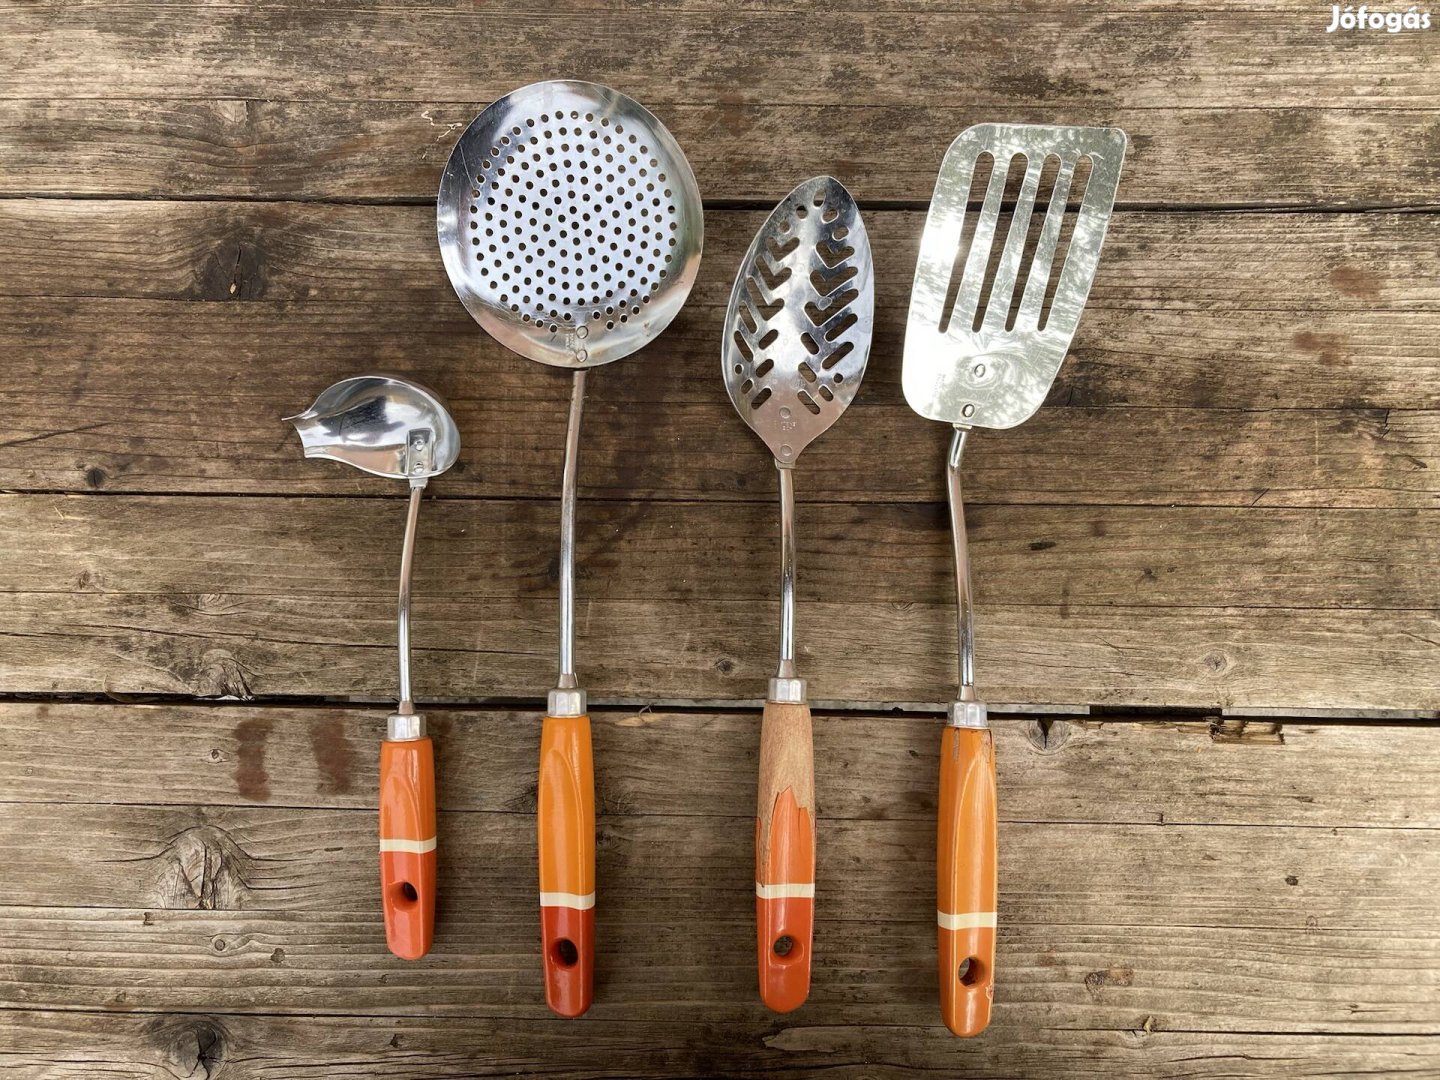 Angol konyhai eszközök / kiegészítők a régi konyhából